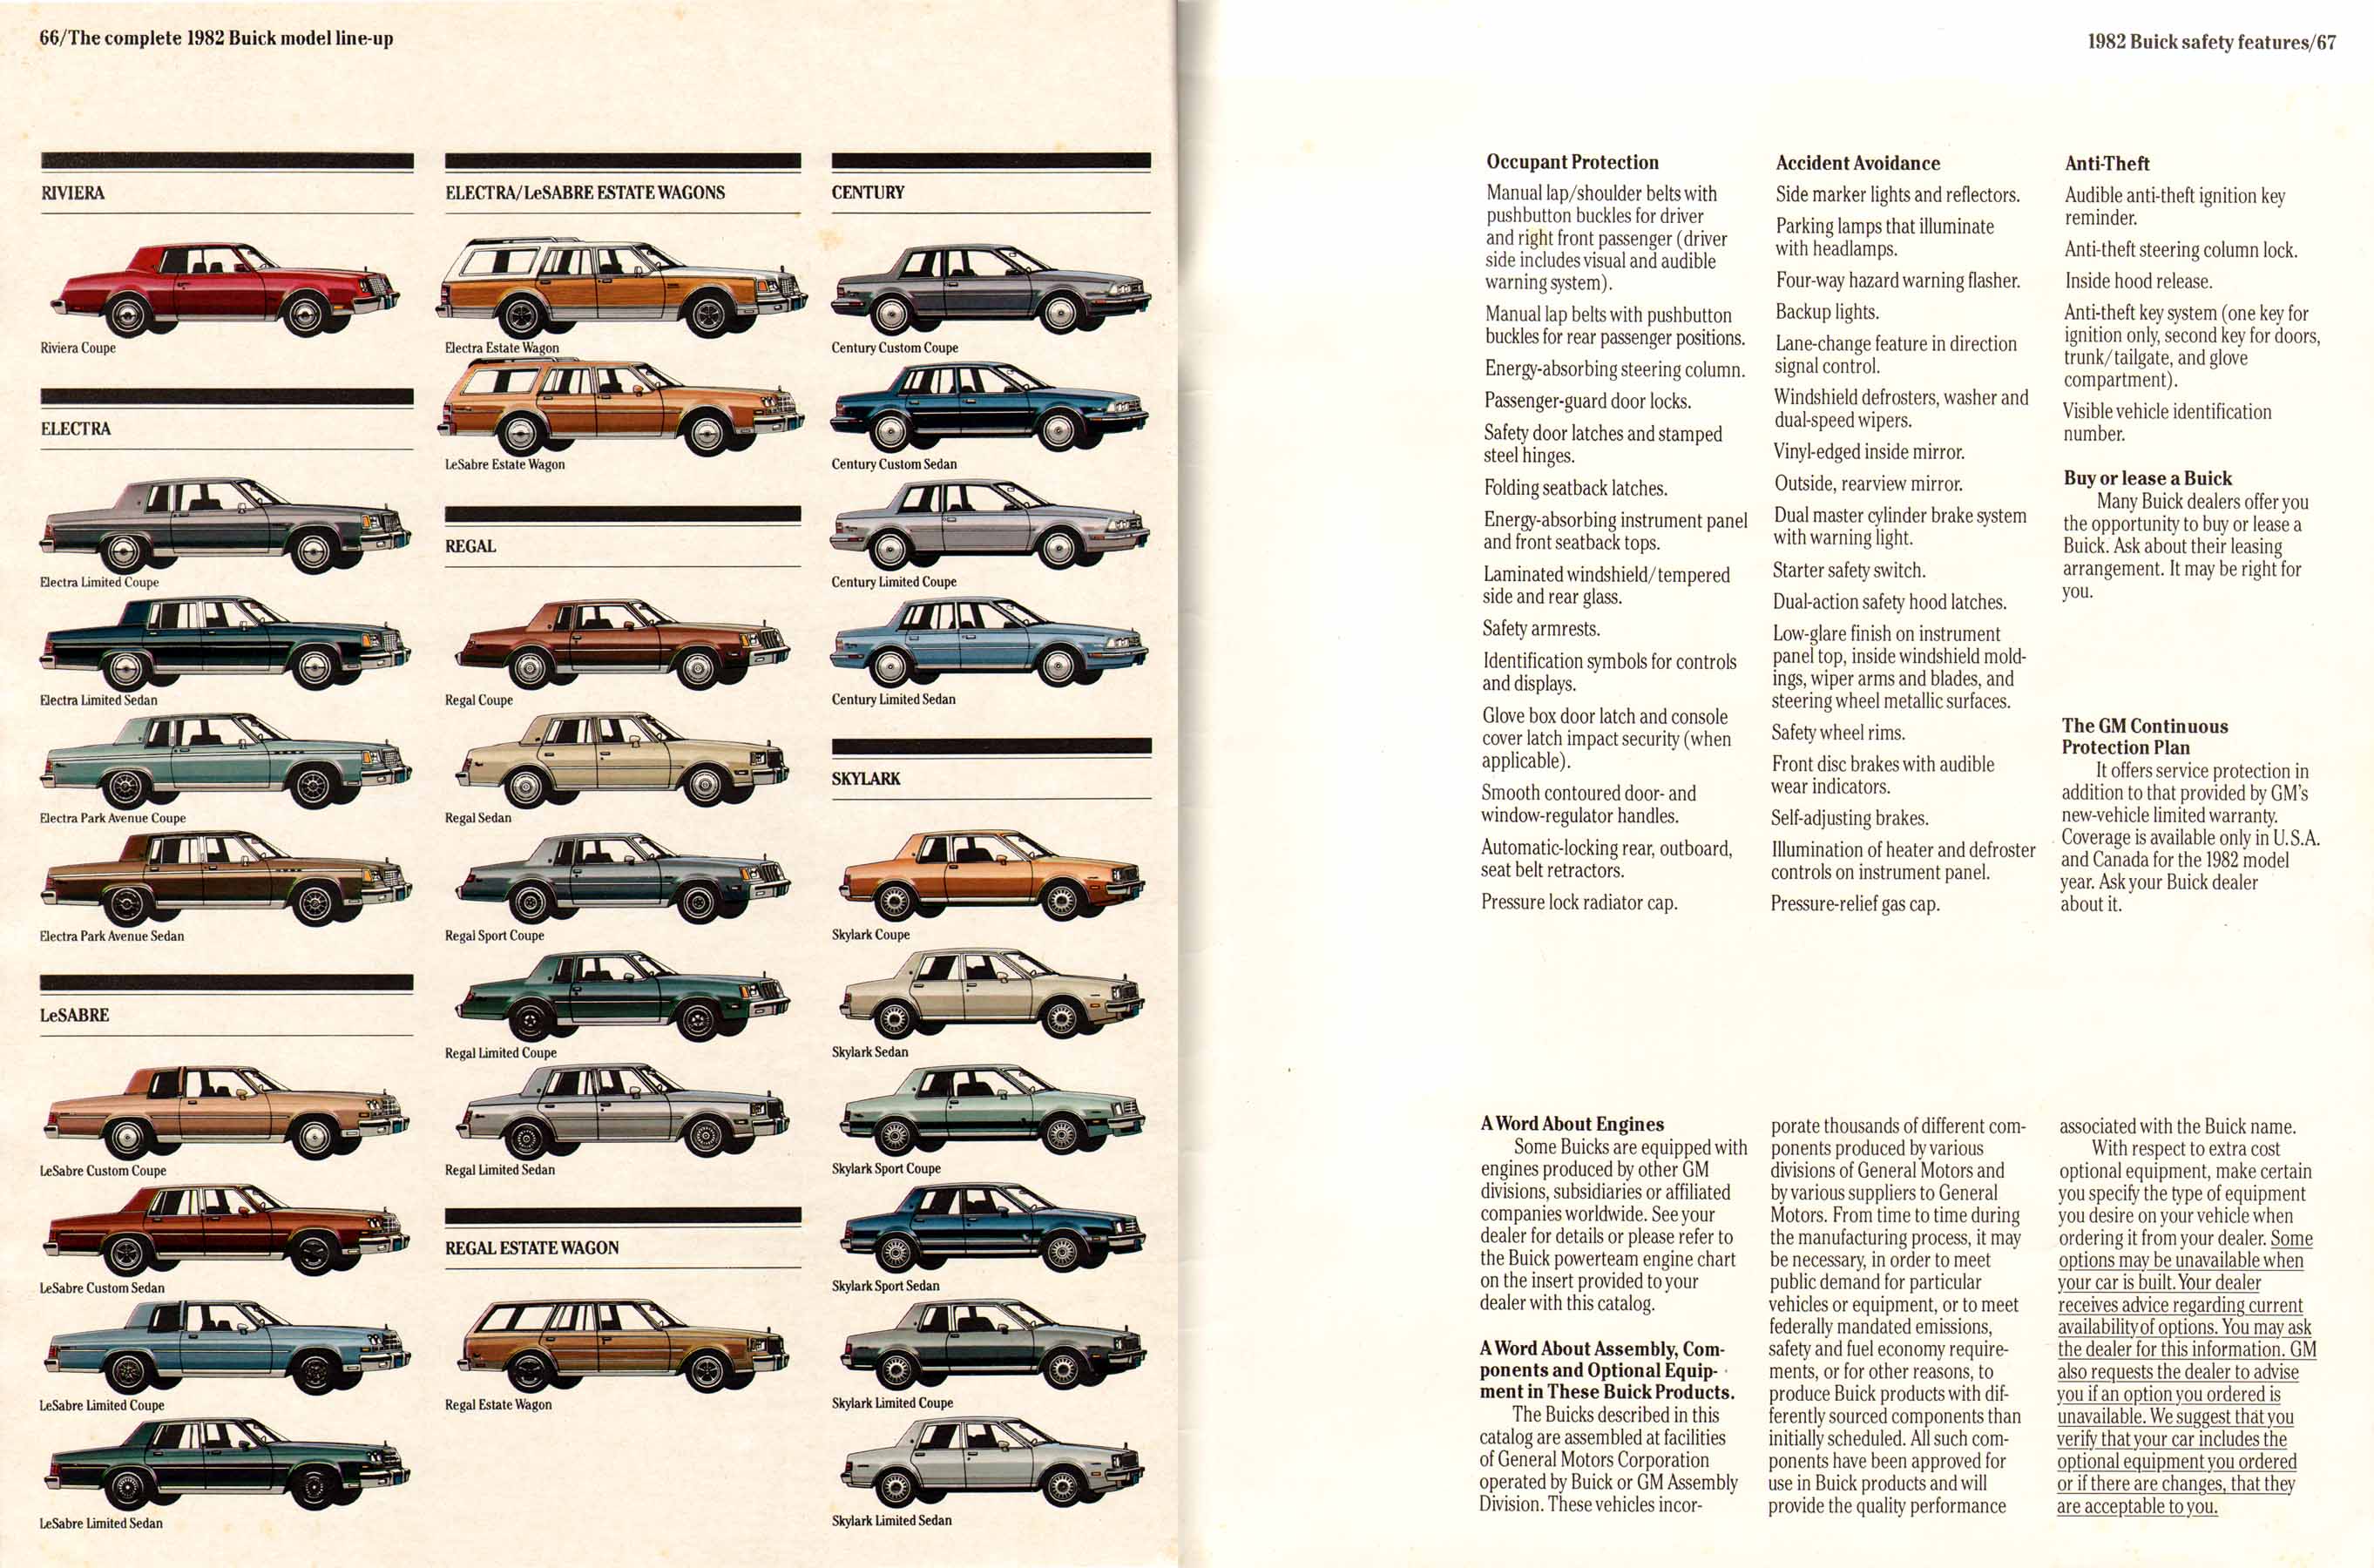 1982 Buick Full Line Prestige-66-67